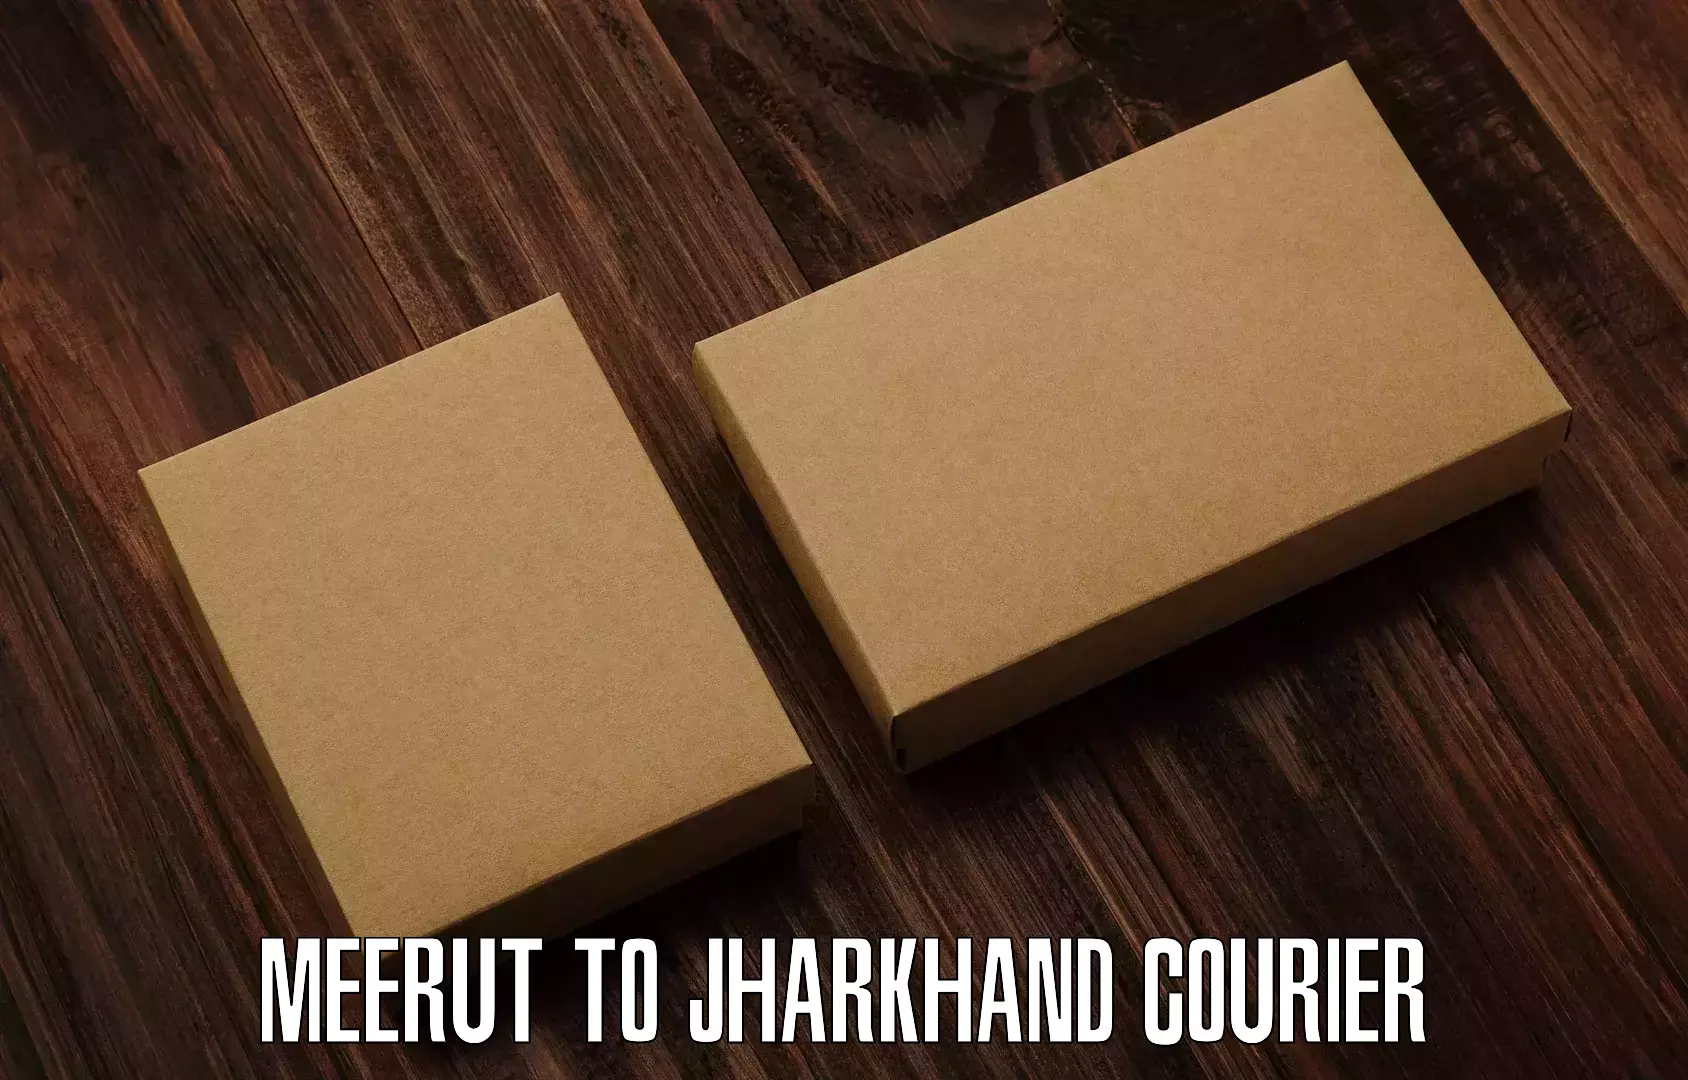 Efficient parcel tracking Meerut to Medininagar